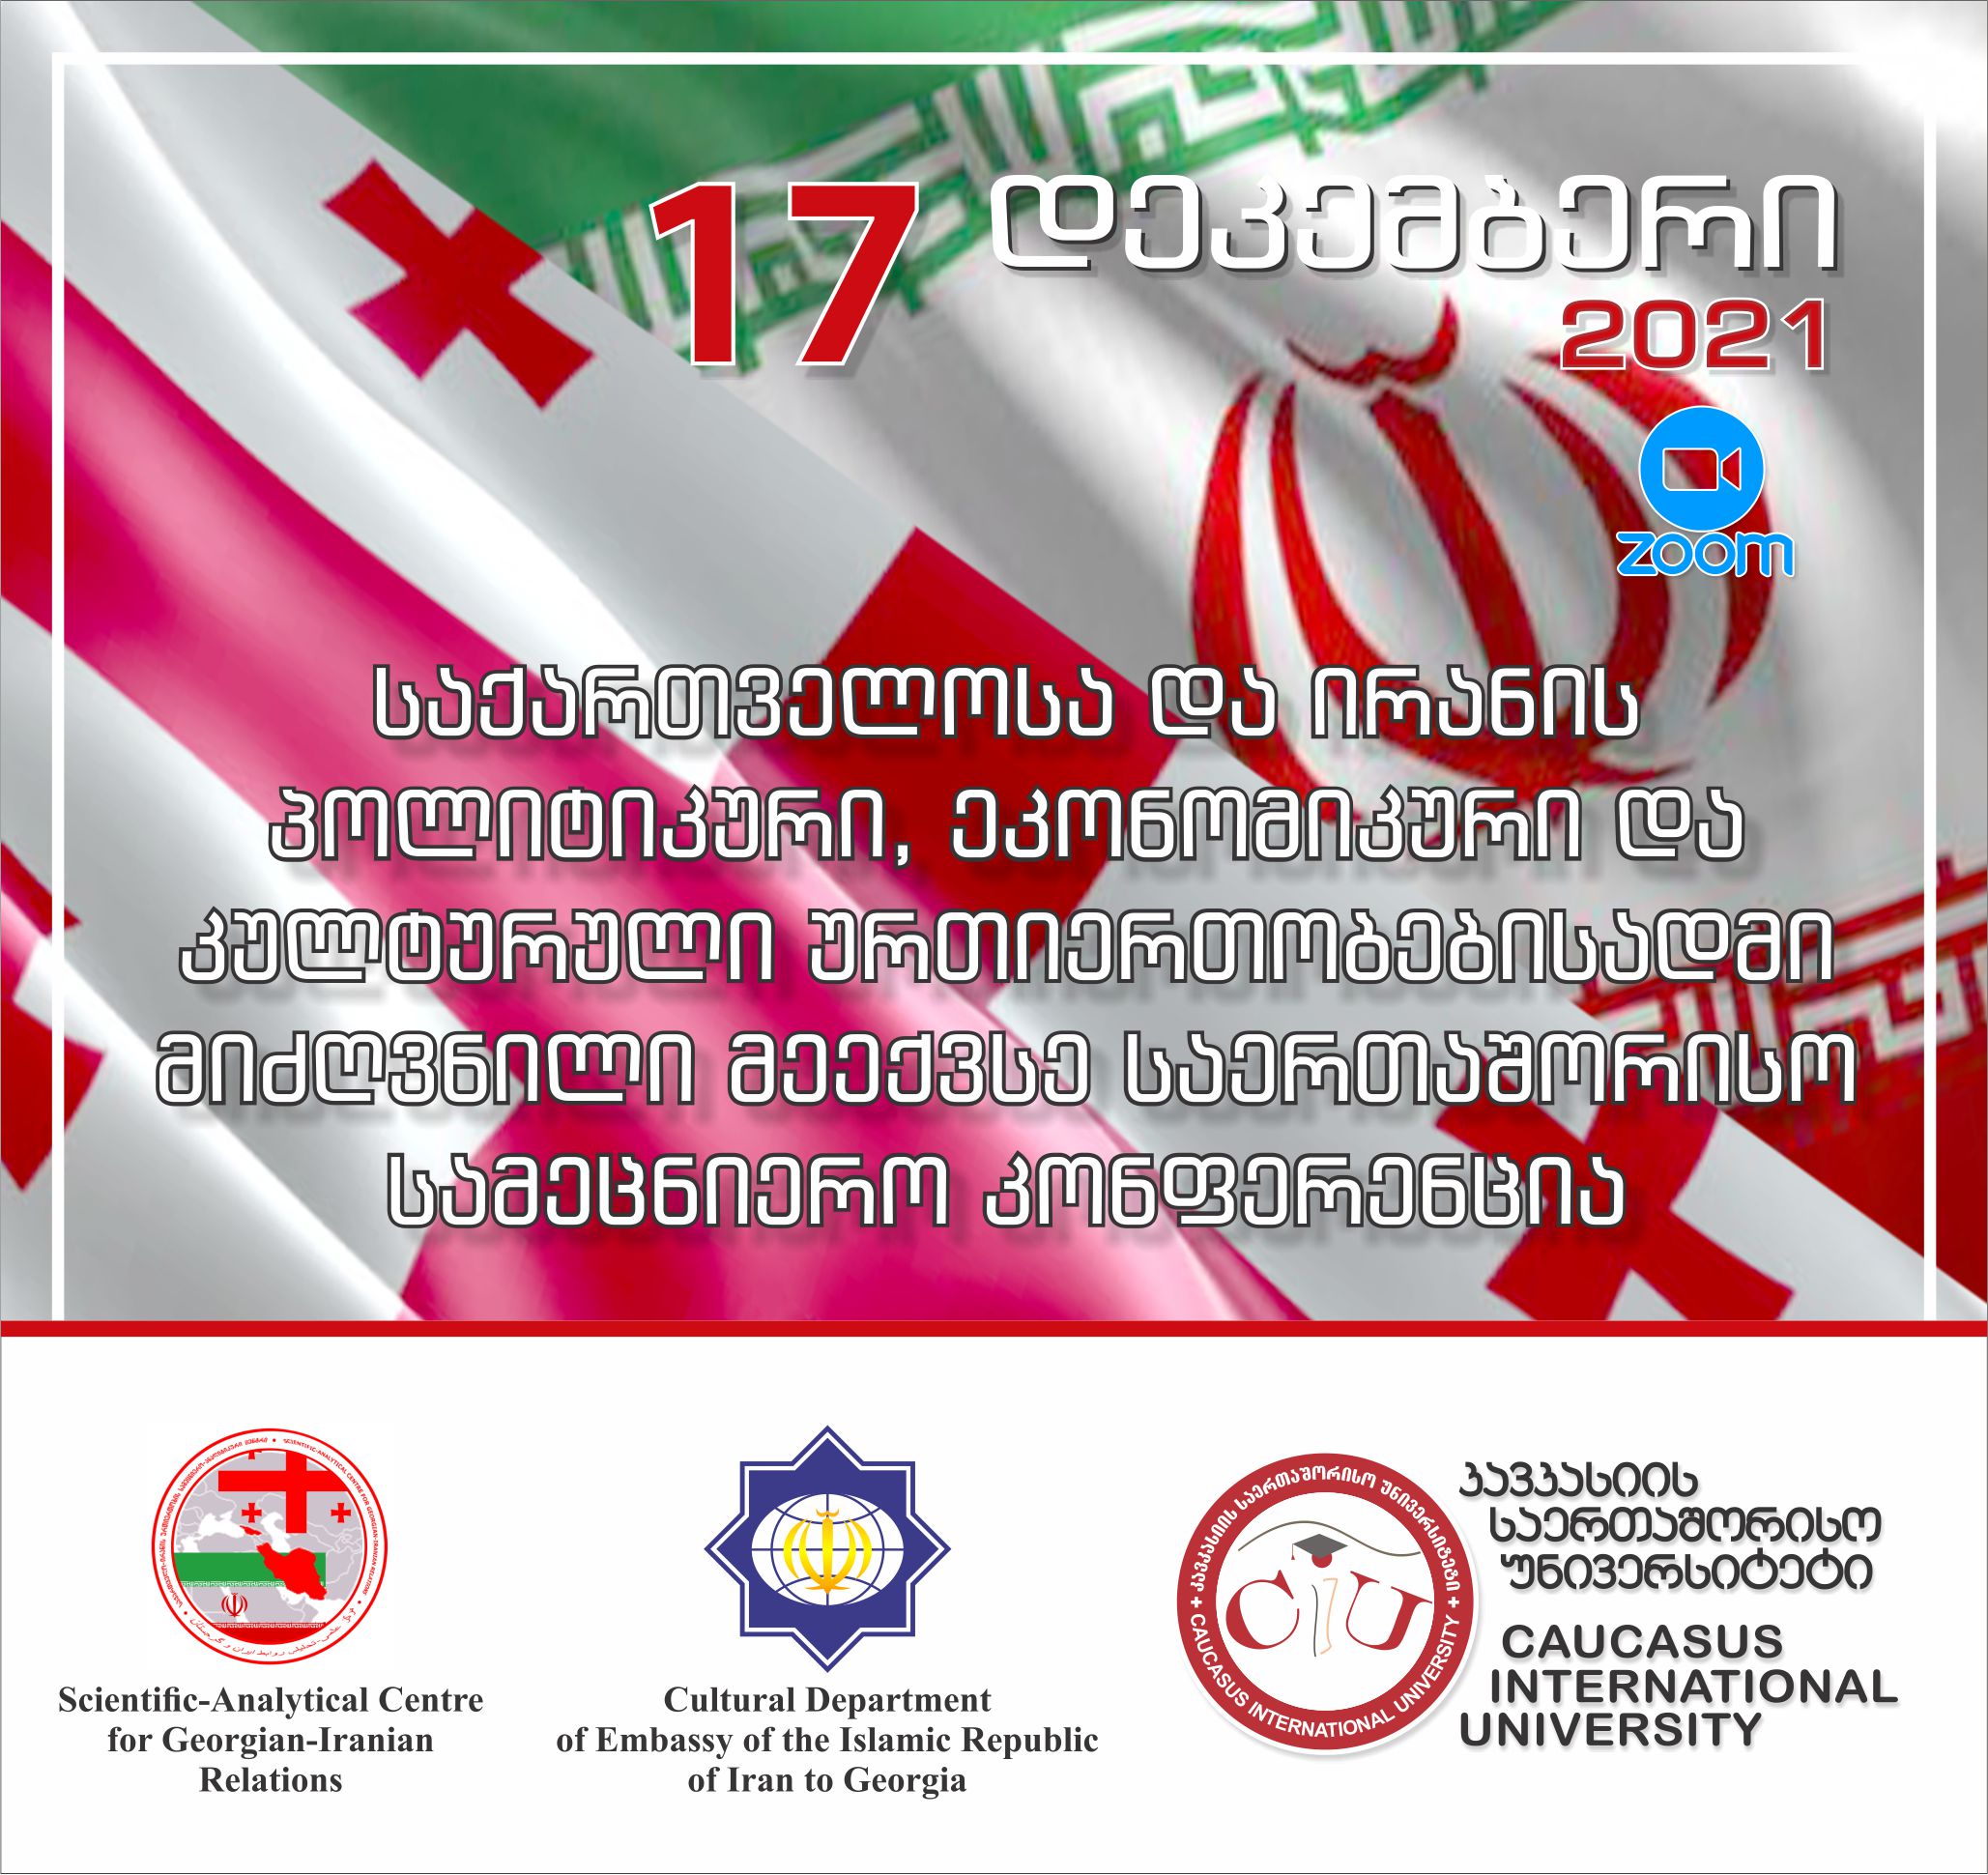 საქართველოსა და ირანის პოლიტიკური, ეკონომიკური და კულტურული ურთიერთობებისადმი მიძღვნილი მეექვსე საერთაშორისო სამეცნიერო კონფერენცია